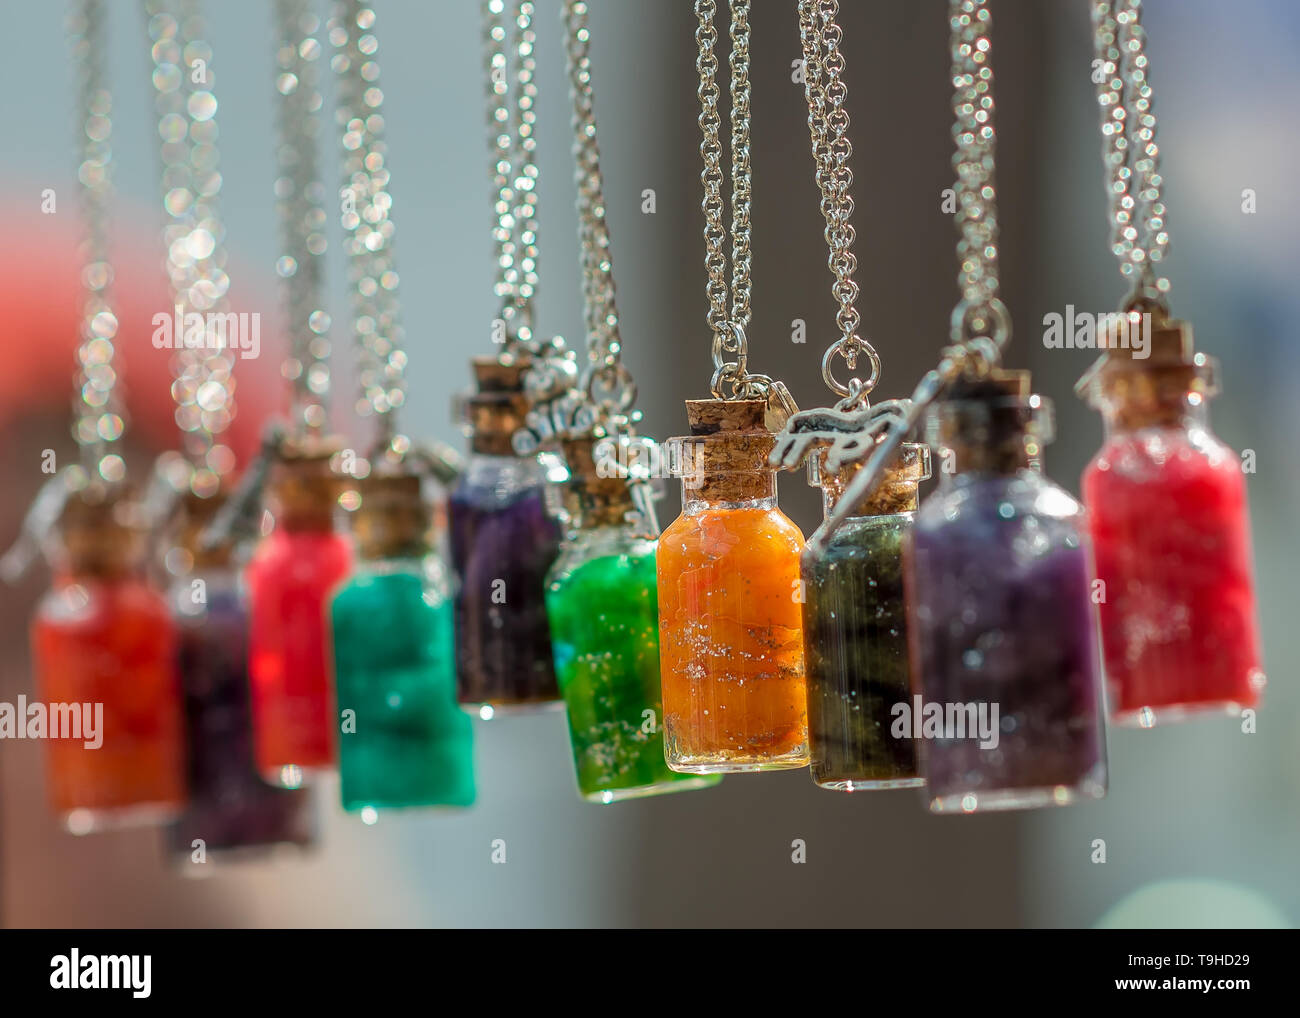 Decorative hanging bottles Stock Photo